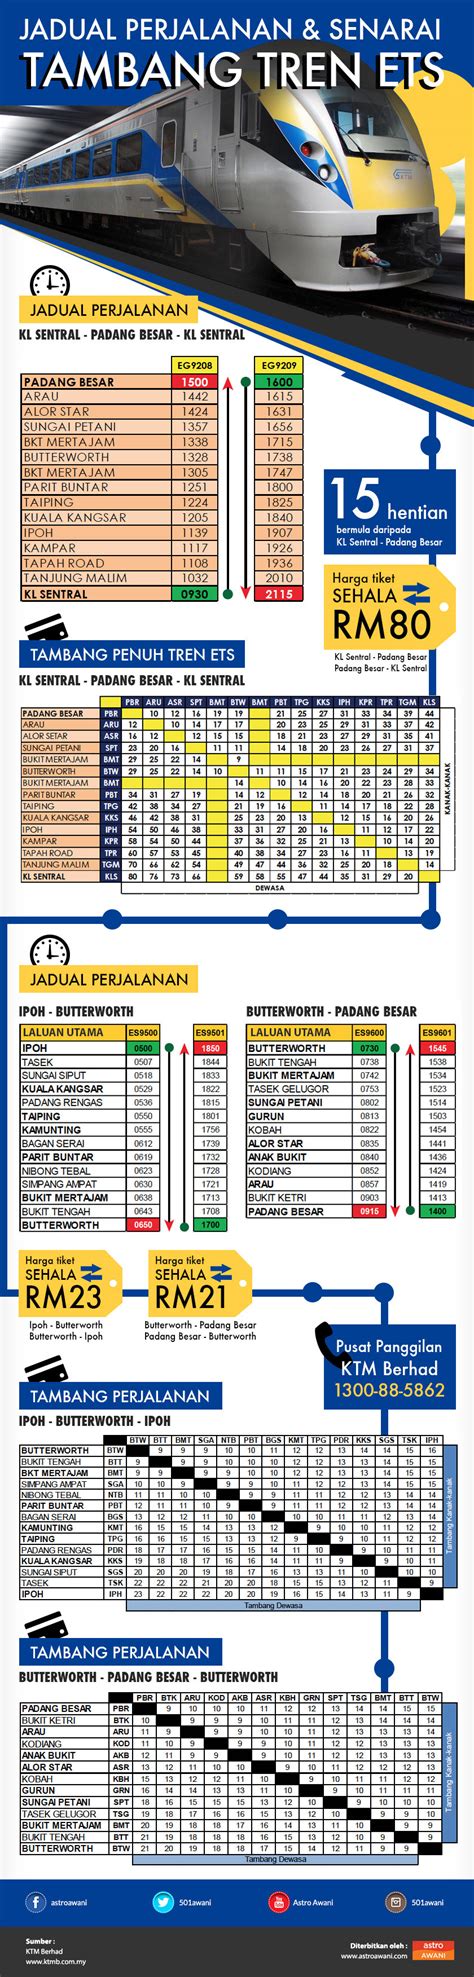 Panduan lengkap cara beli tiket train ets di malaysia. Jadual perjalanan dan senarai tambang tren ETS | Astro Awani